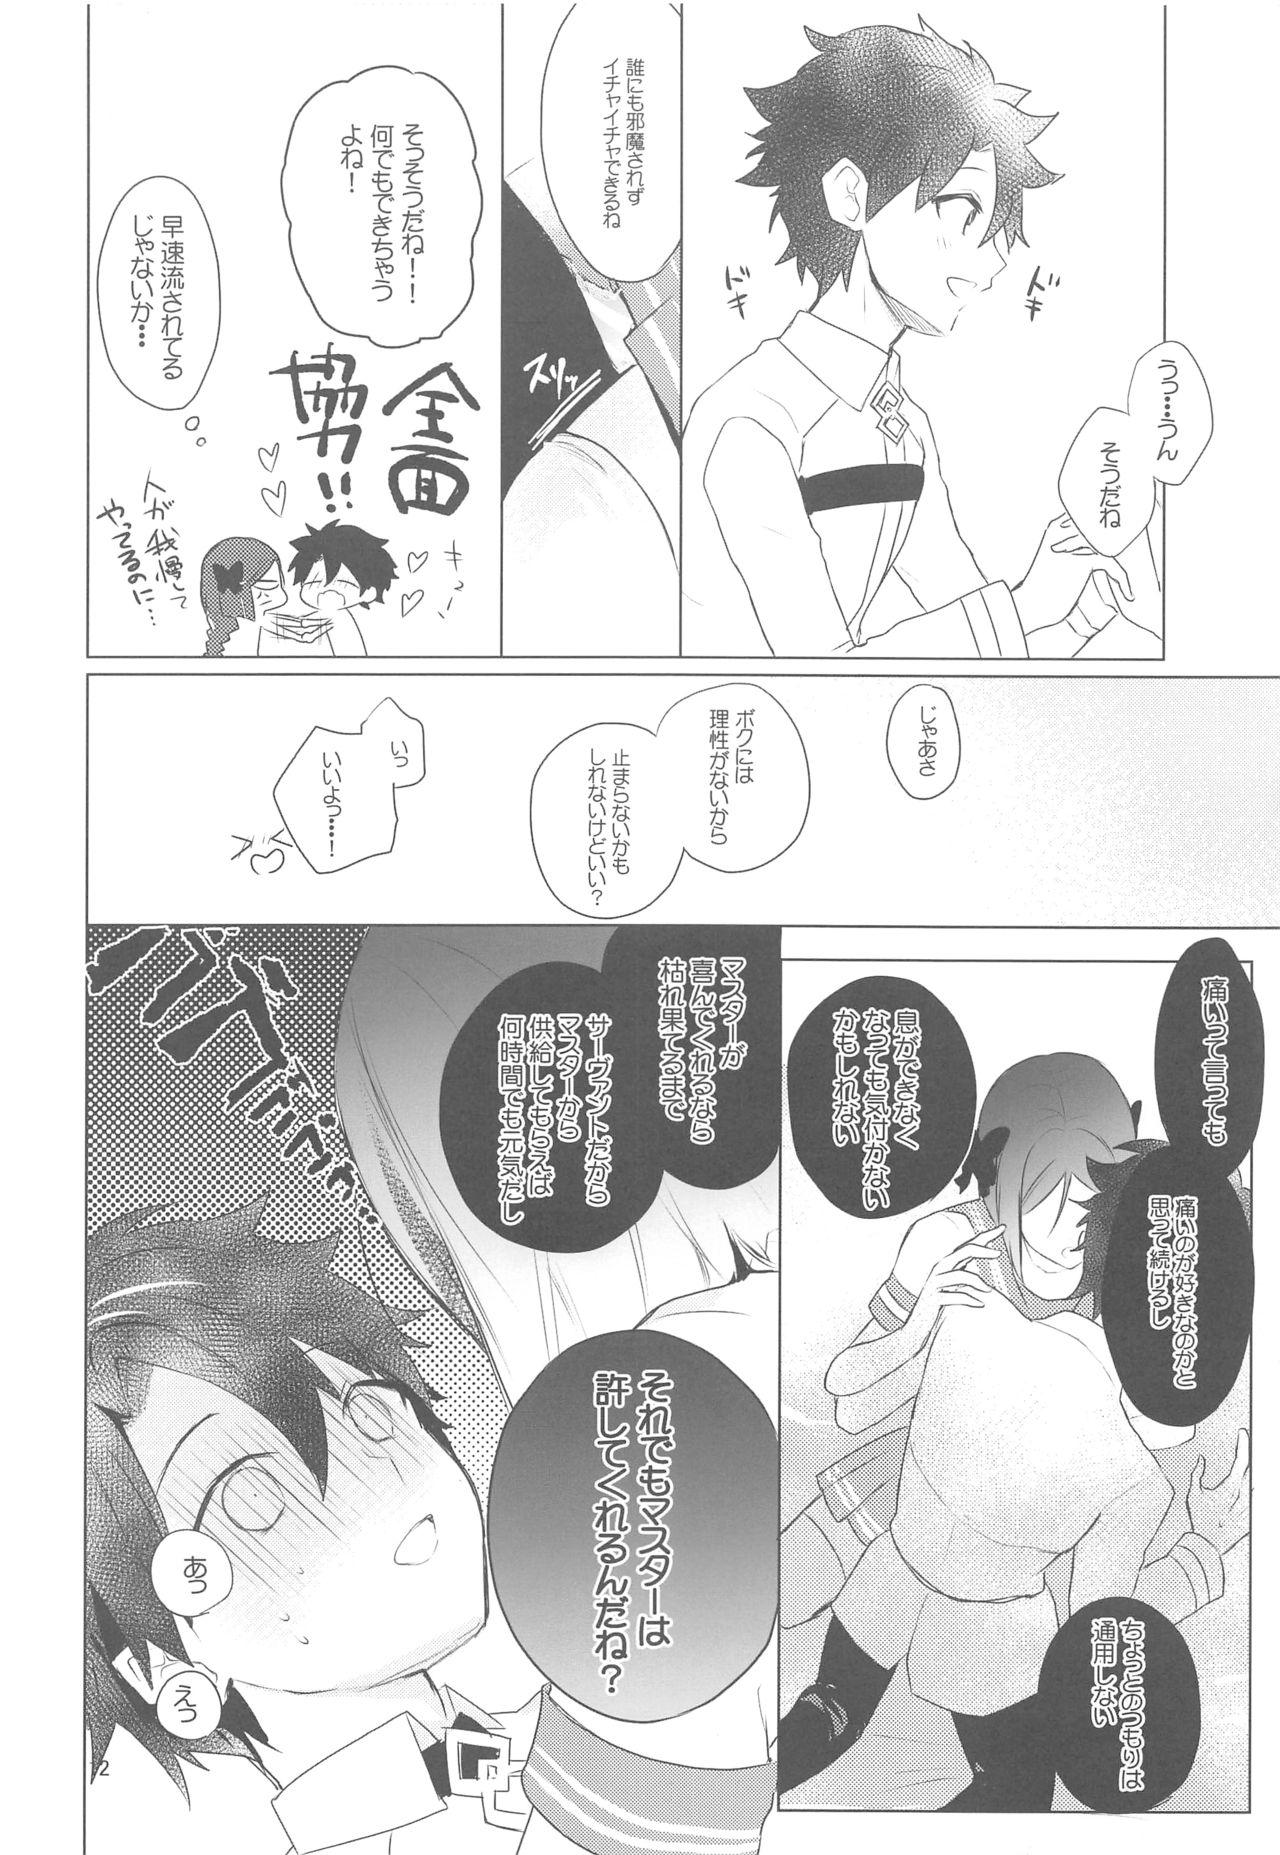 Deutsch Hoshi 4 Servant ga Eraberu tte Iukara Kakugo Kimeru Mae ni Waver-chan ni o Aite Shite Moratta Hanashi - Fate grand order Indonesia - Page 11